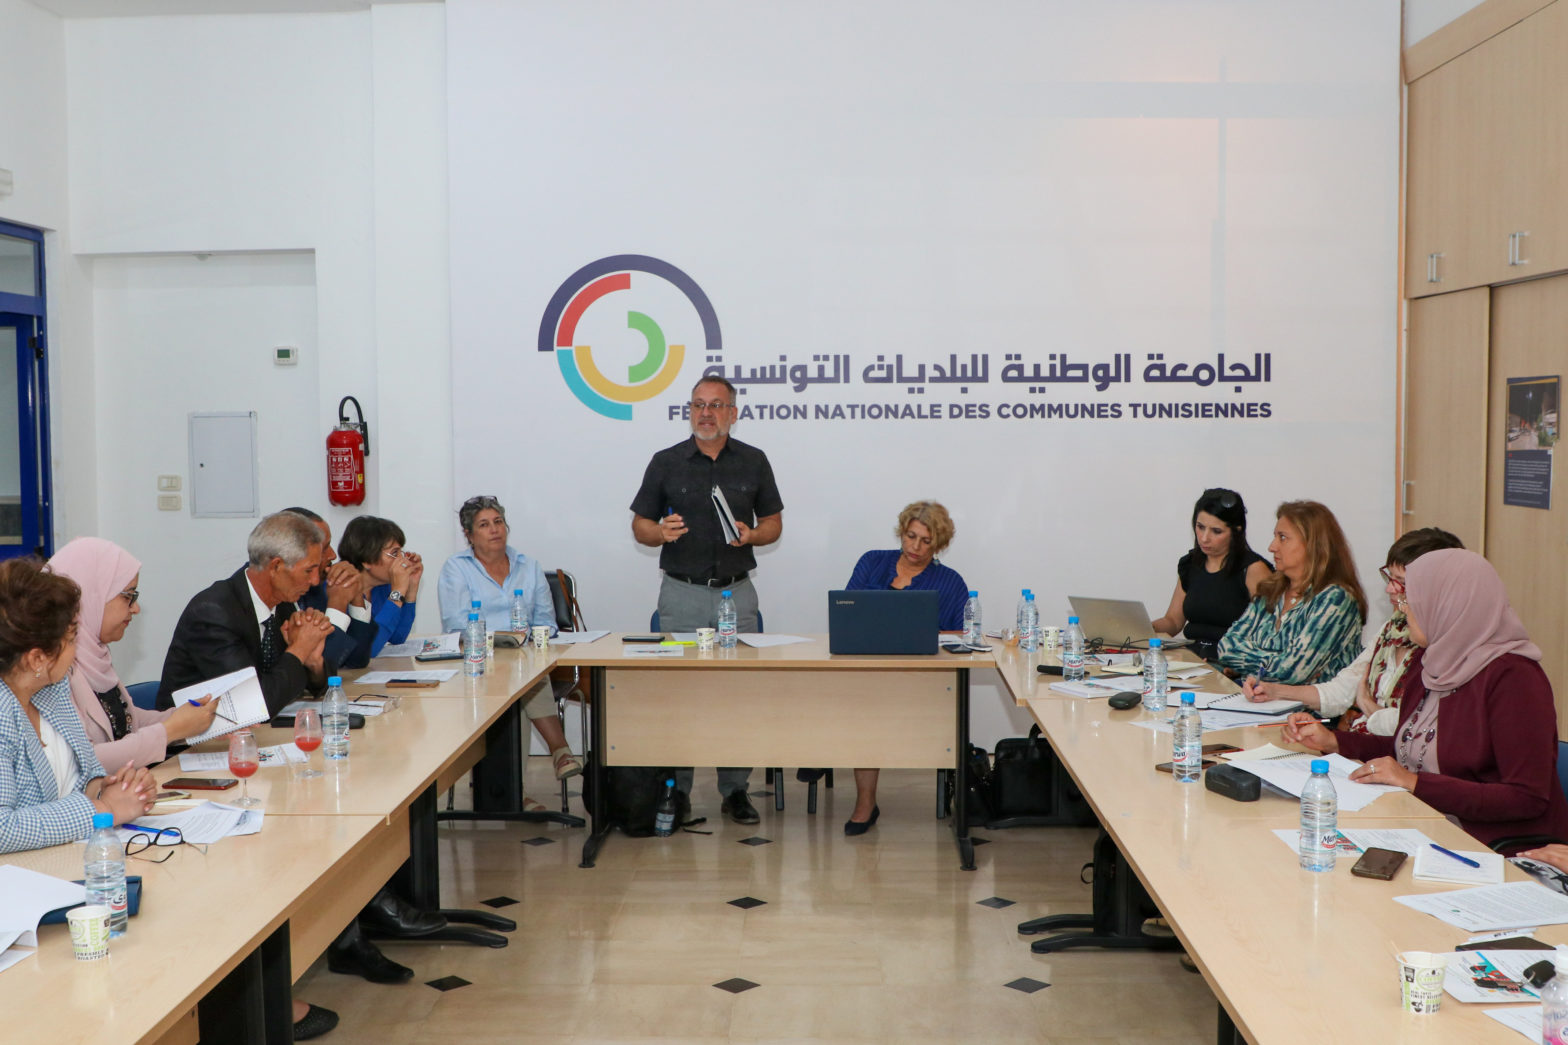 La Charte Tunisienne du Droit à la Ville: pour la promotion d’une gouvernance locale démocratique et inclusive